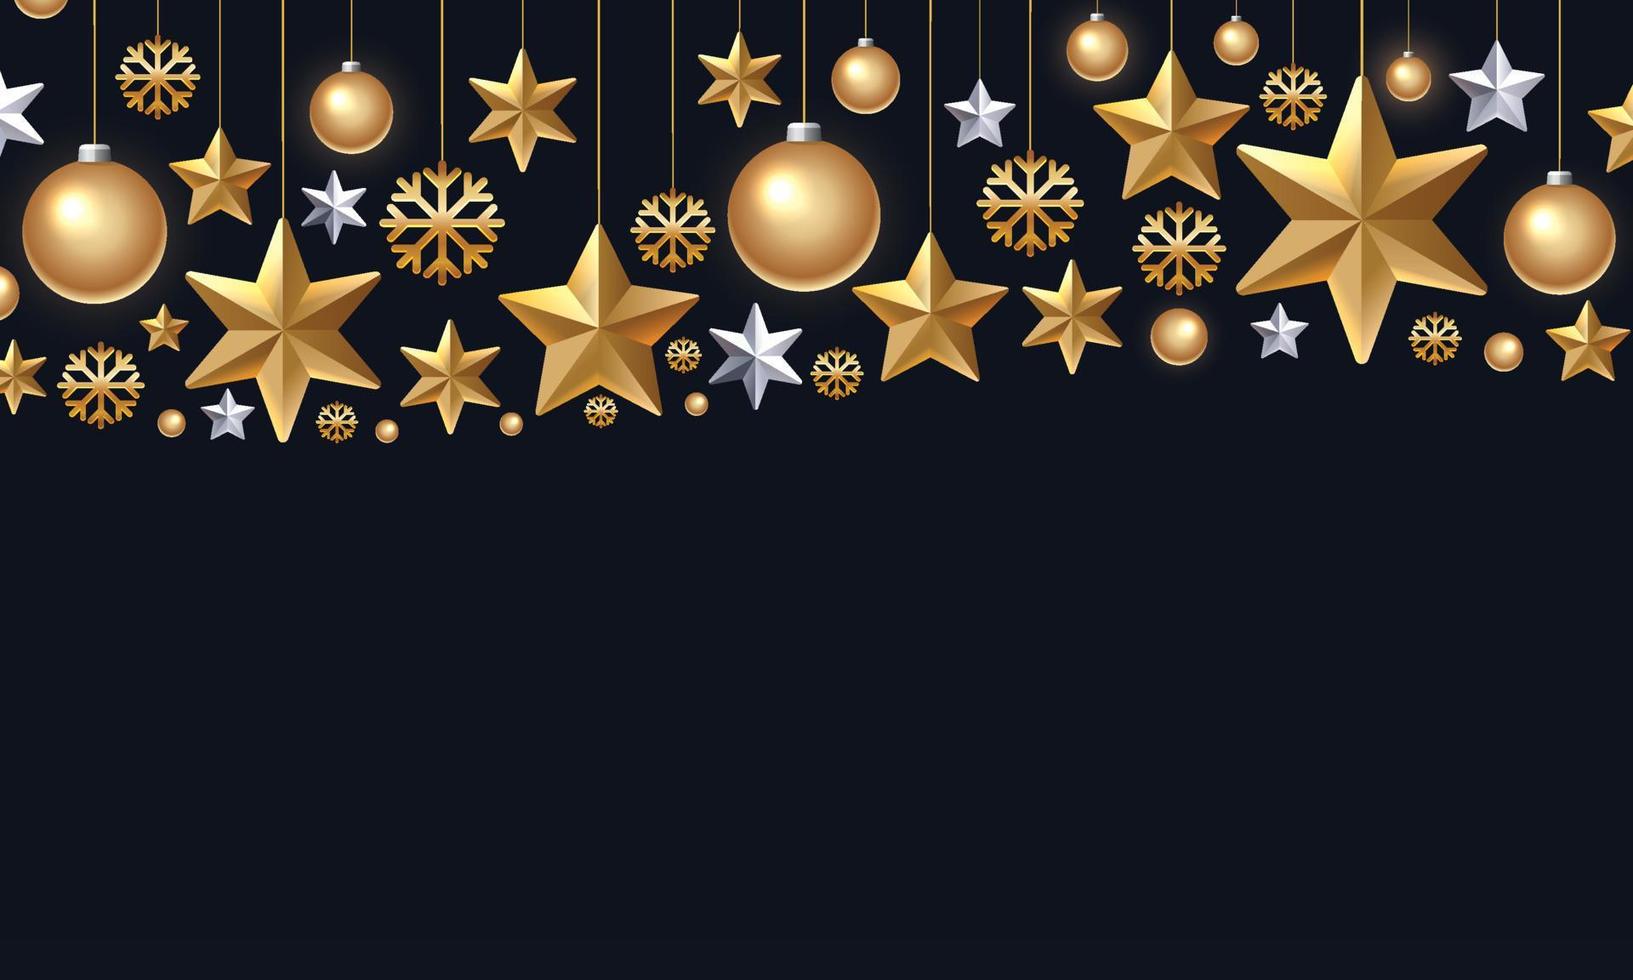 flocons de neige dorés scintillants, boules de noël et étoiles sur fond noir. Vector illustration 3d d'ornement de Noël suspendu brillant. modèle de couverture ou de bannière du nouvel an. décoration de vacances d'hiver.